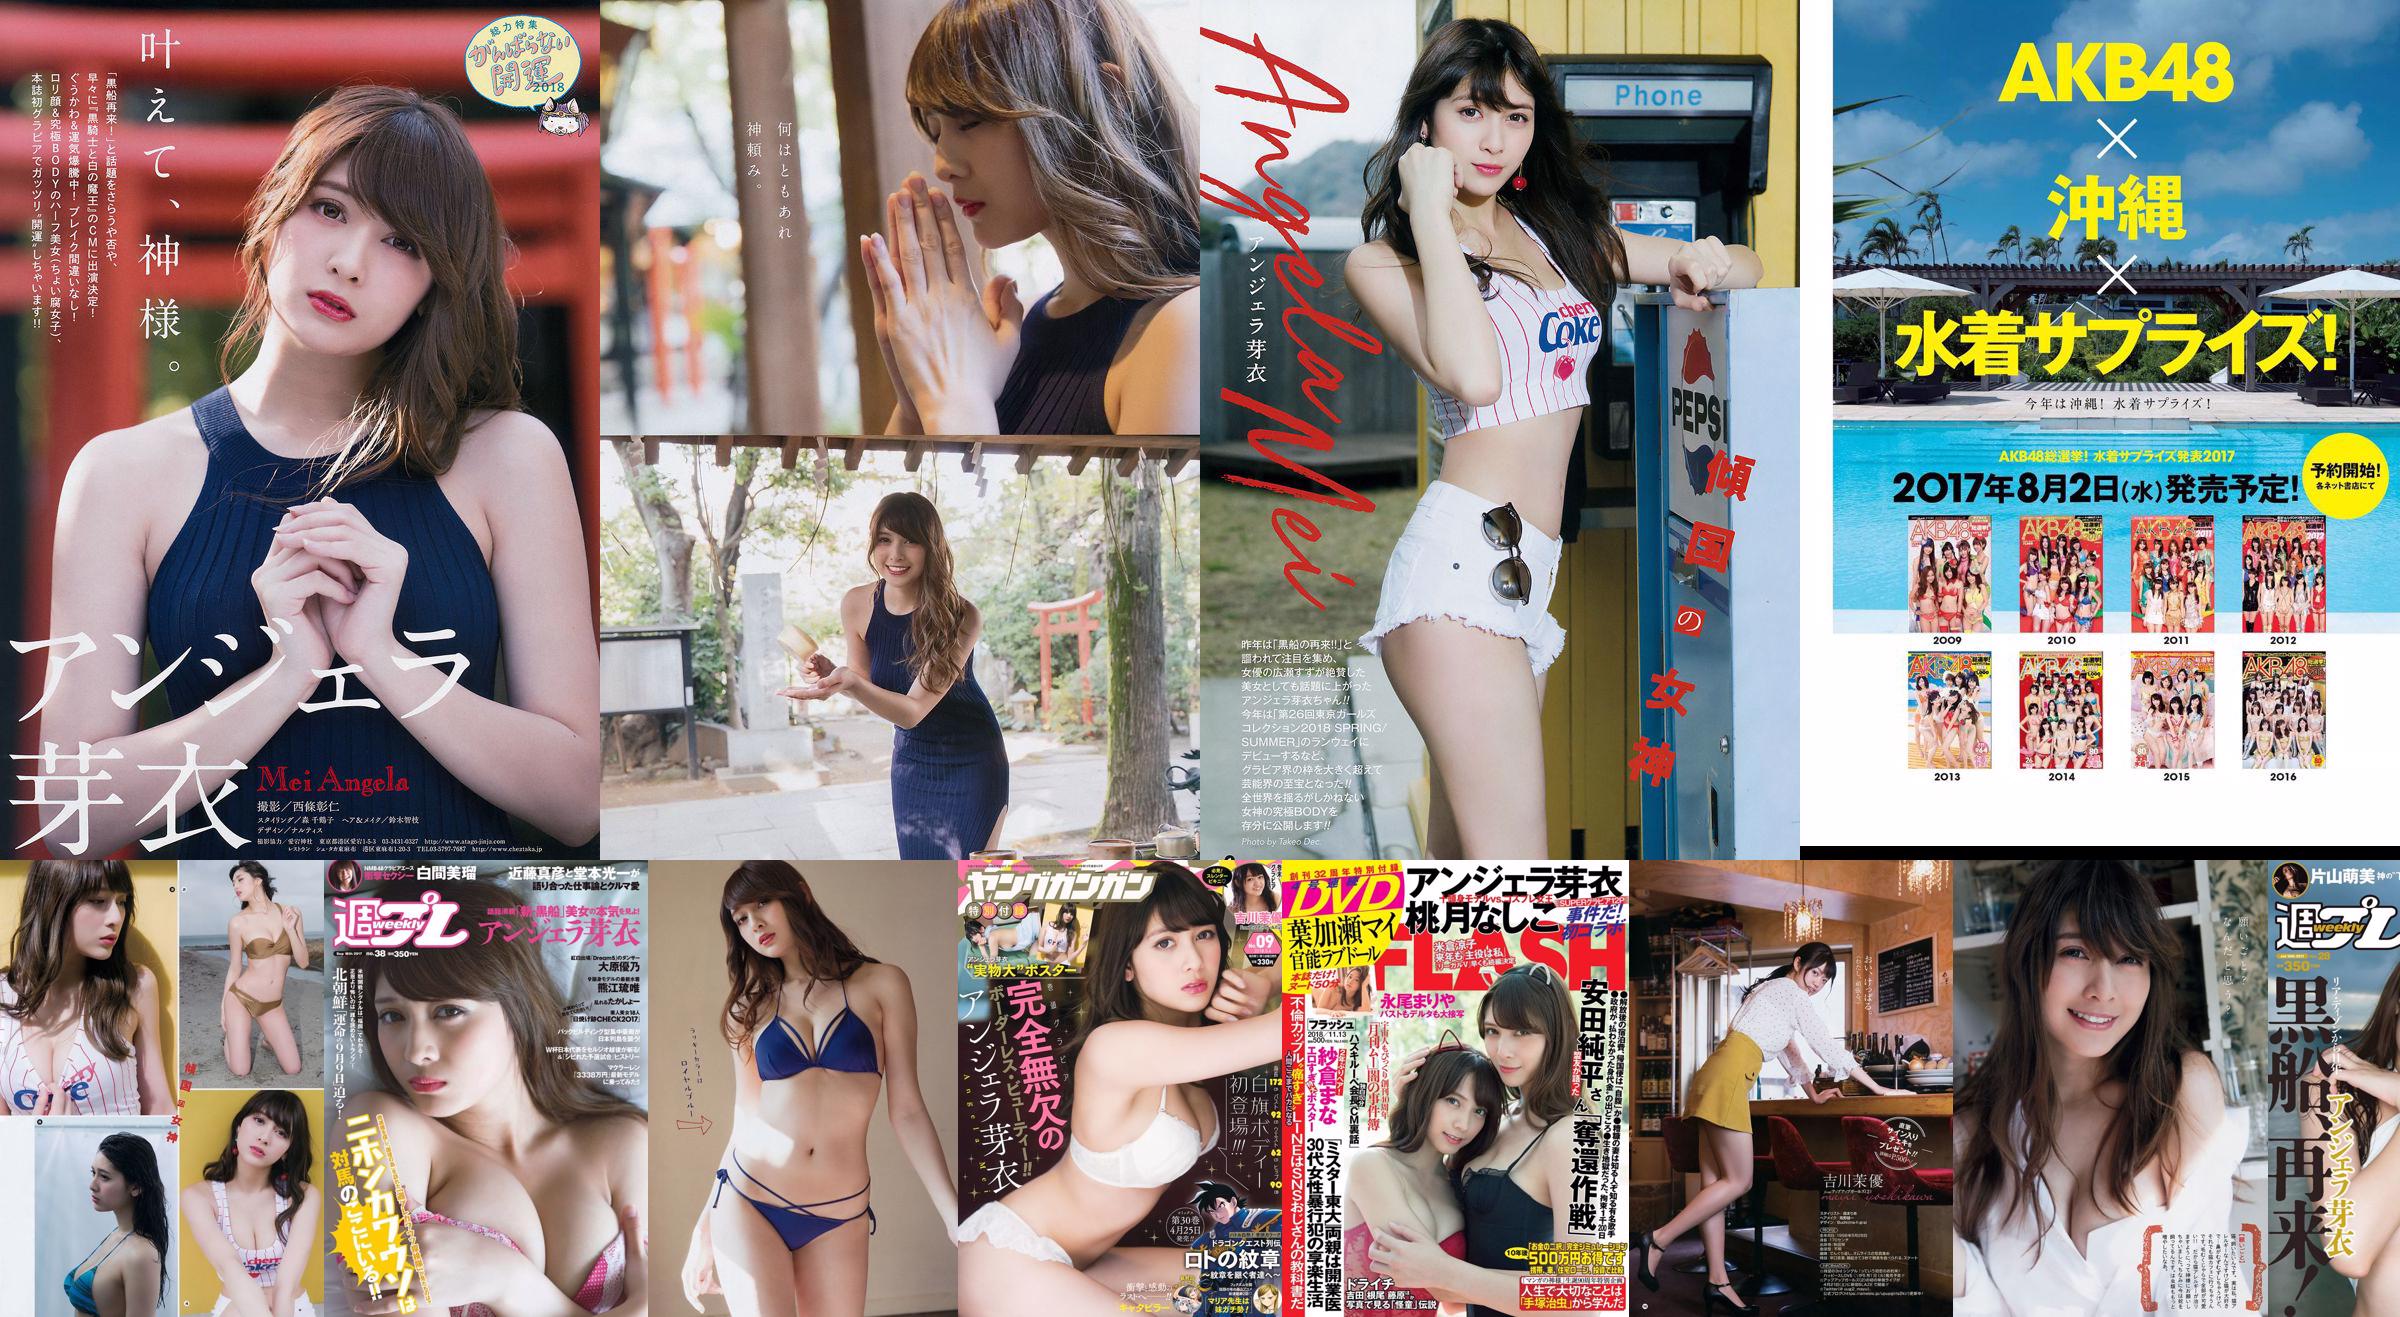 Angela Mei Riho Abiru Yuuna Suzuki Yuno Ohara Moemi Katayama Ito Ohno [Weekly Playboy] 2017 No.28 Photograph No.2180fb Page 14